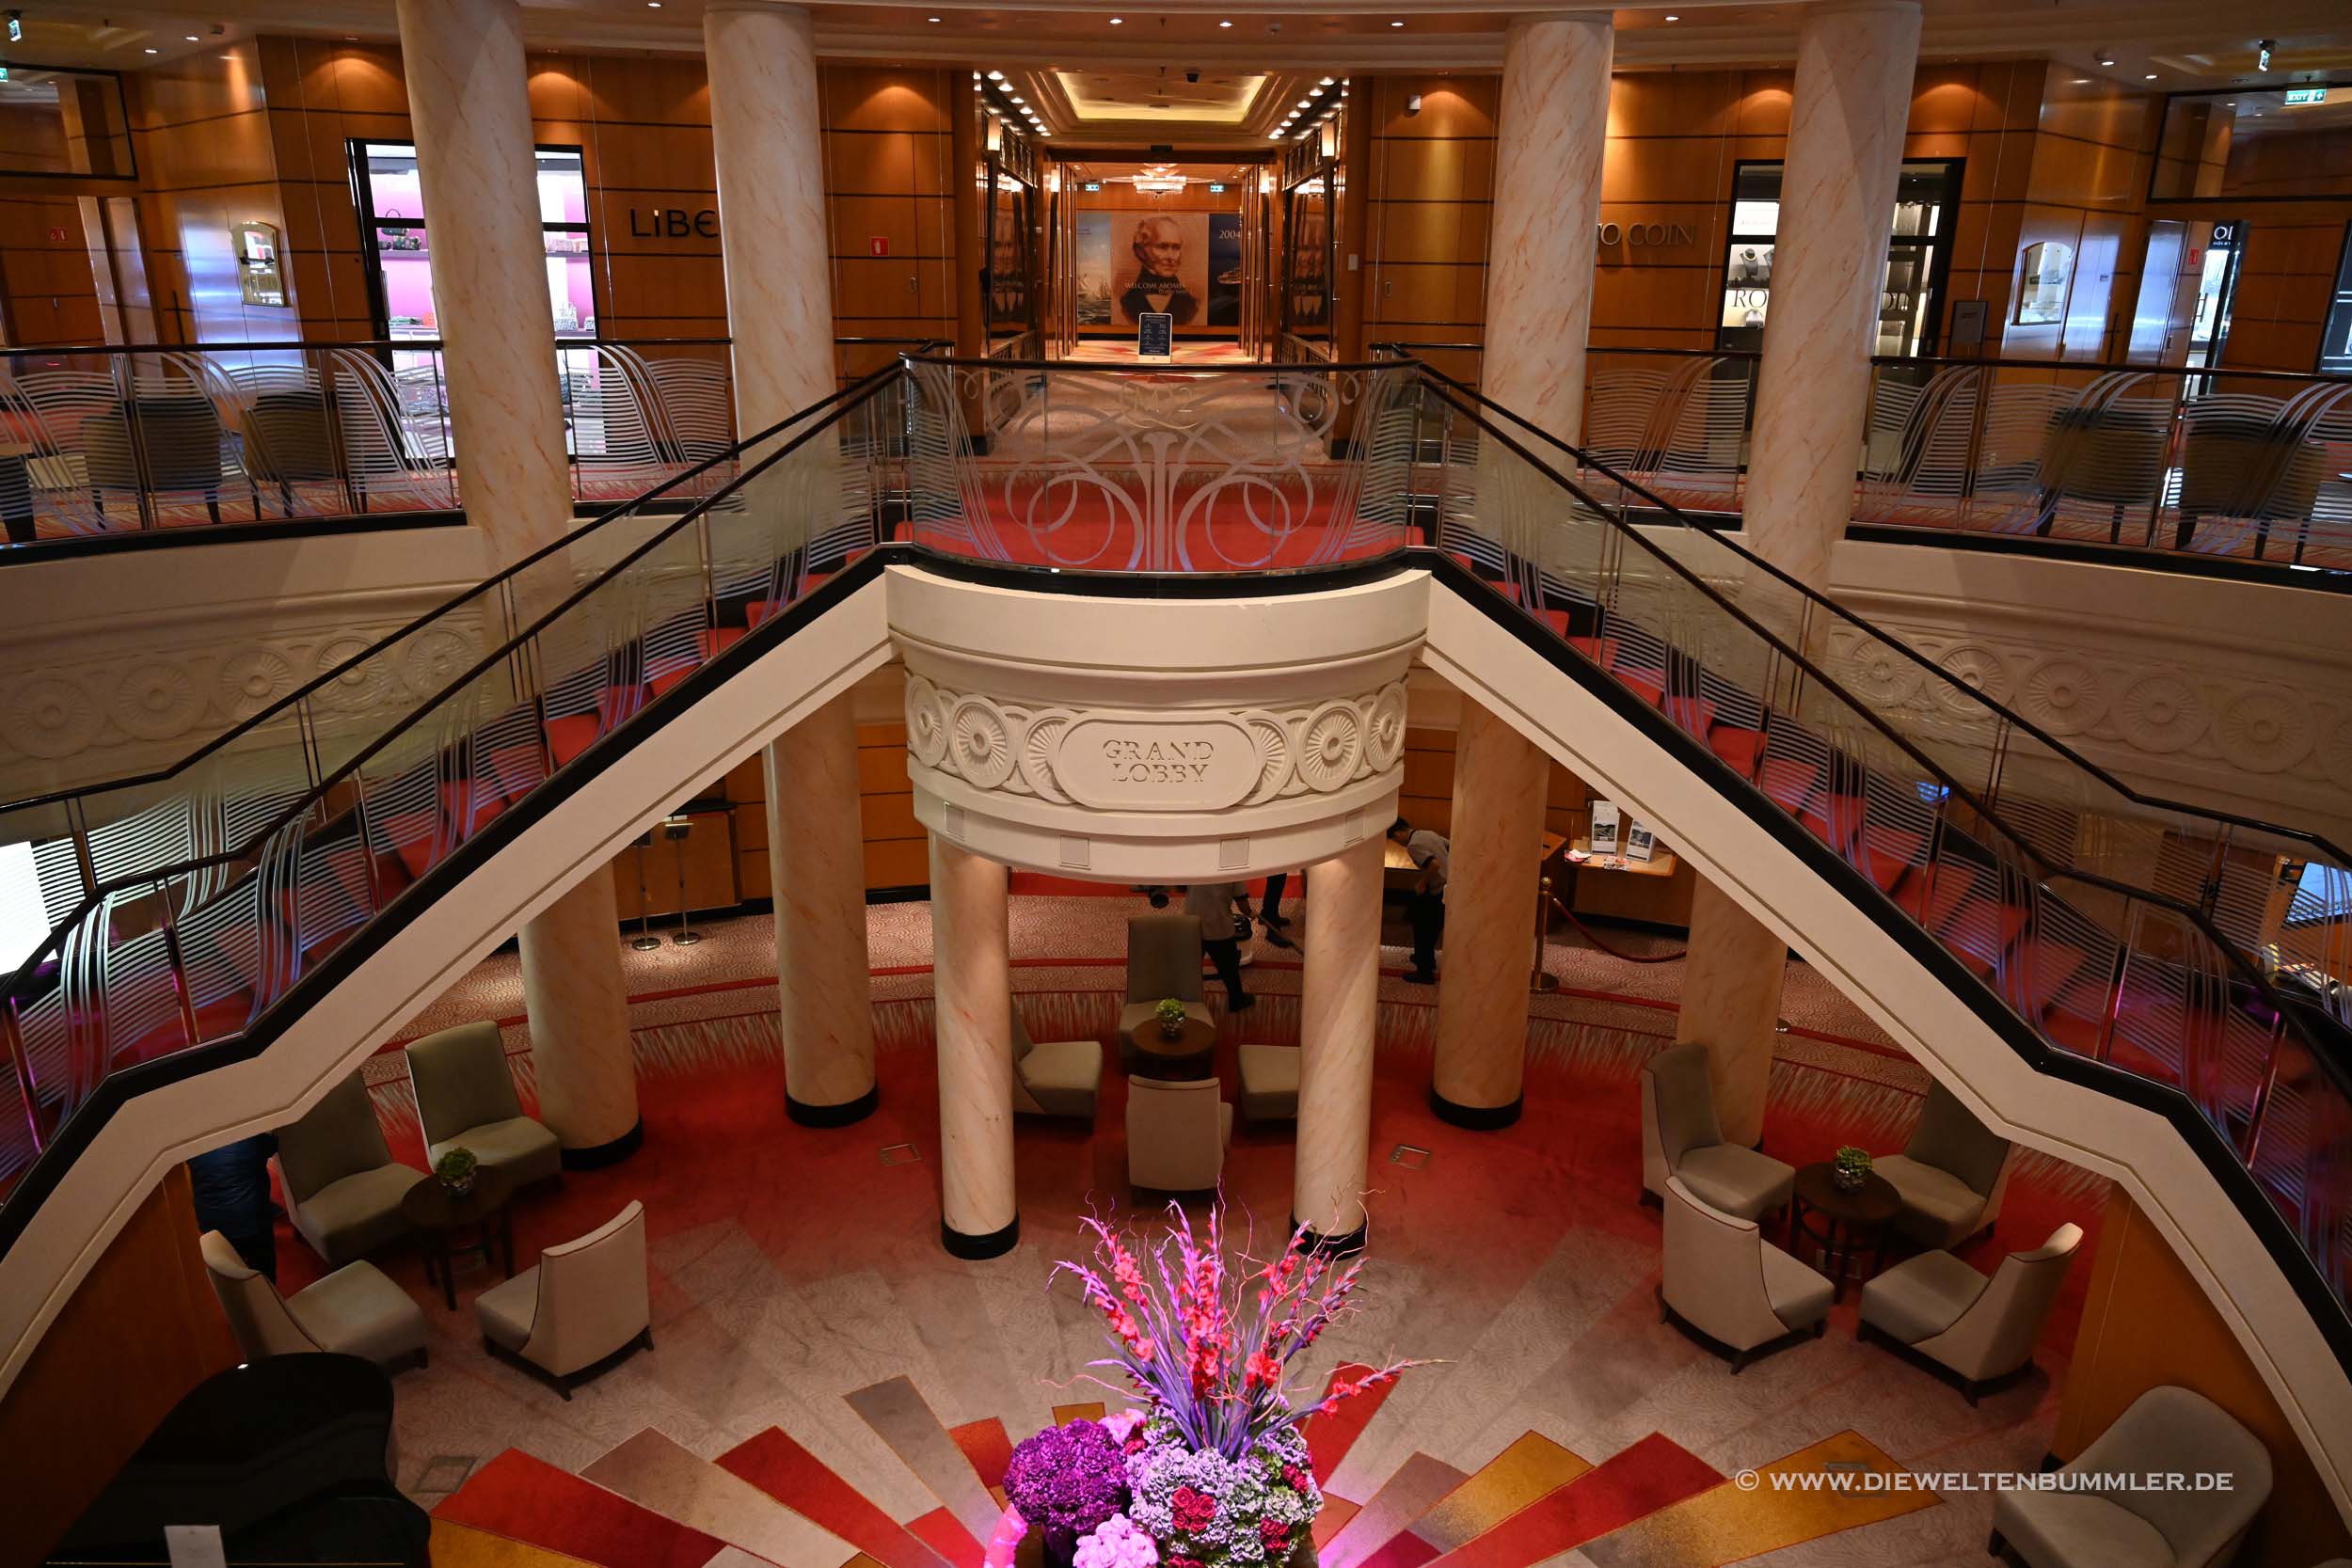 Die Grand Lobby